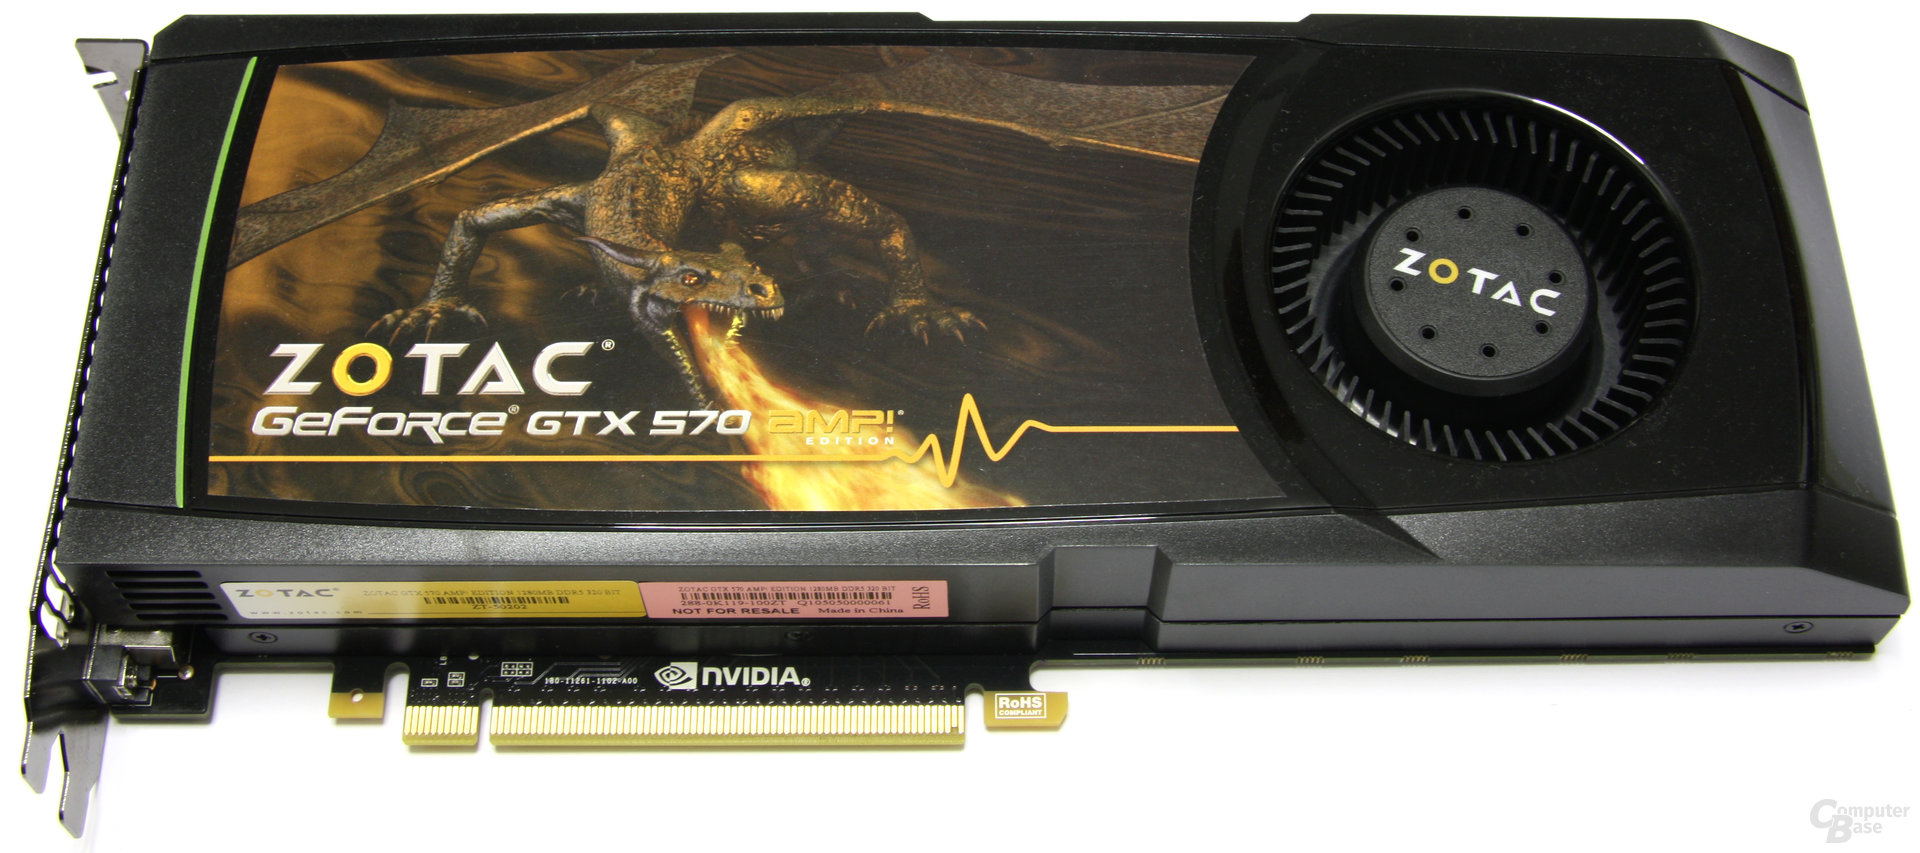 Zotac GeForce GTX 570 AMP!